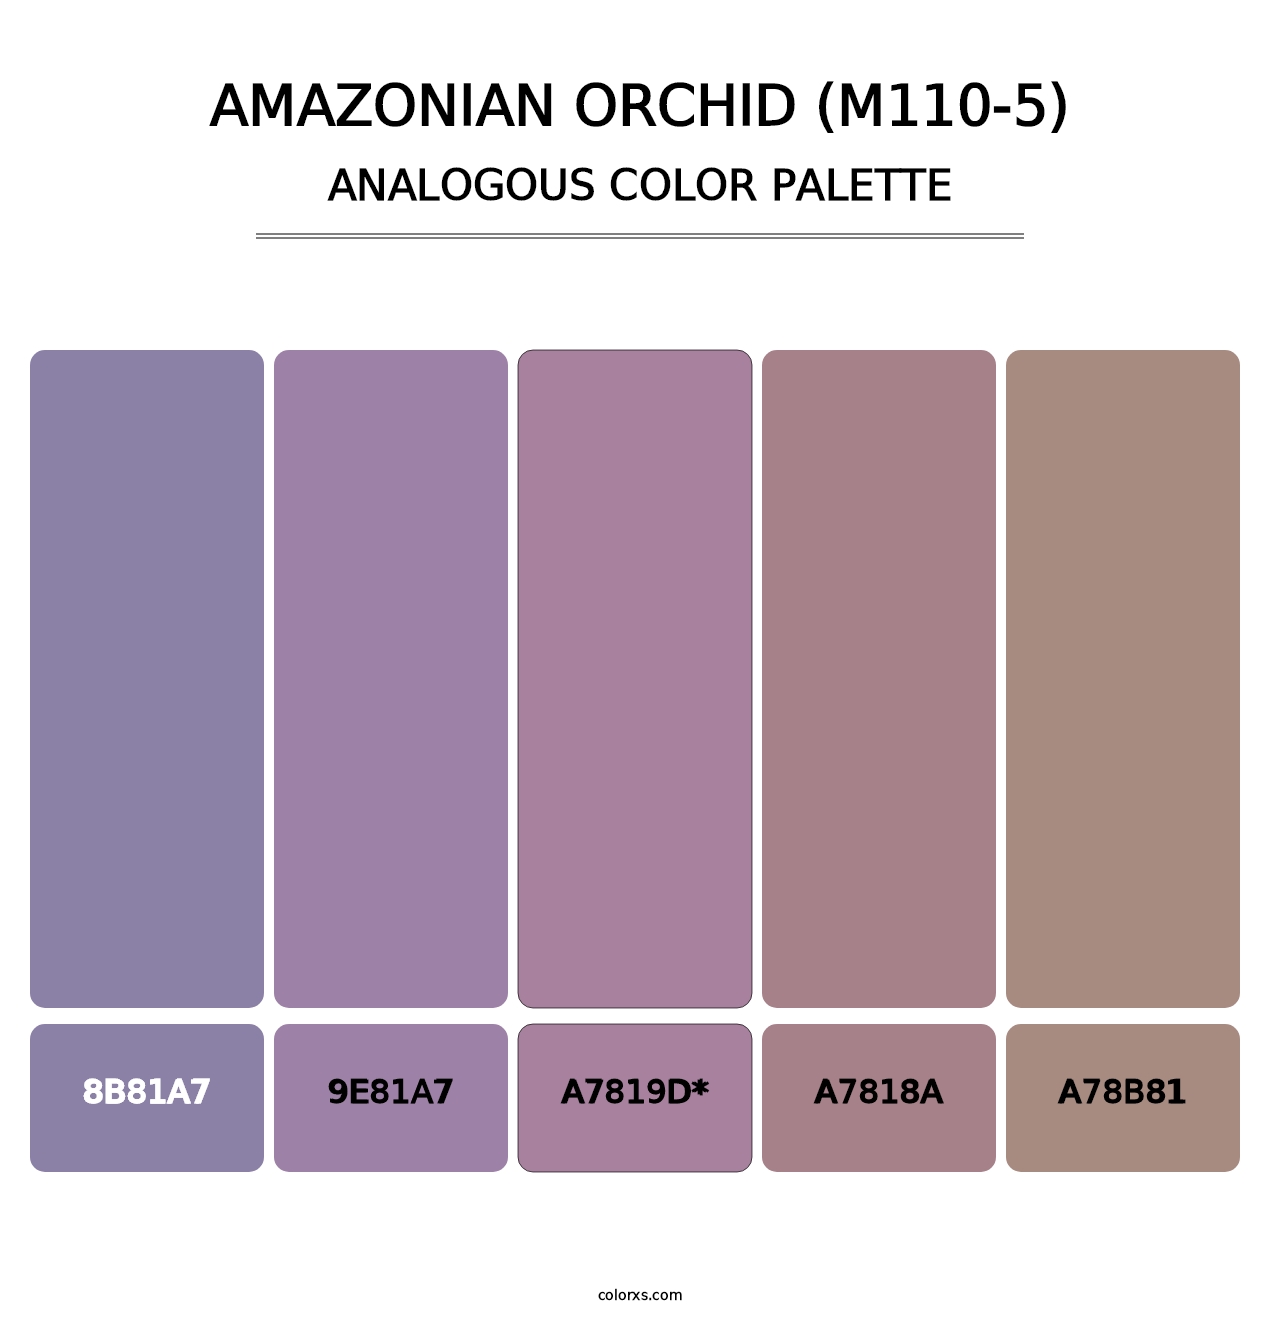 Amazonian Orchid (M110-5) - Analogous Color Palette